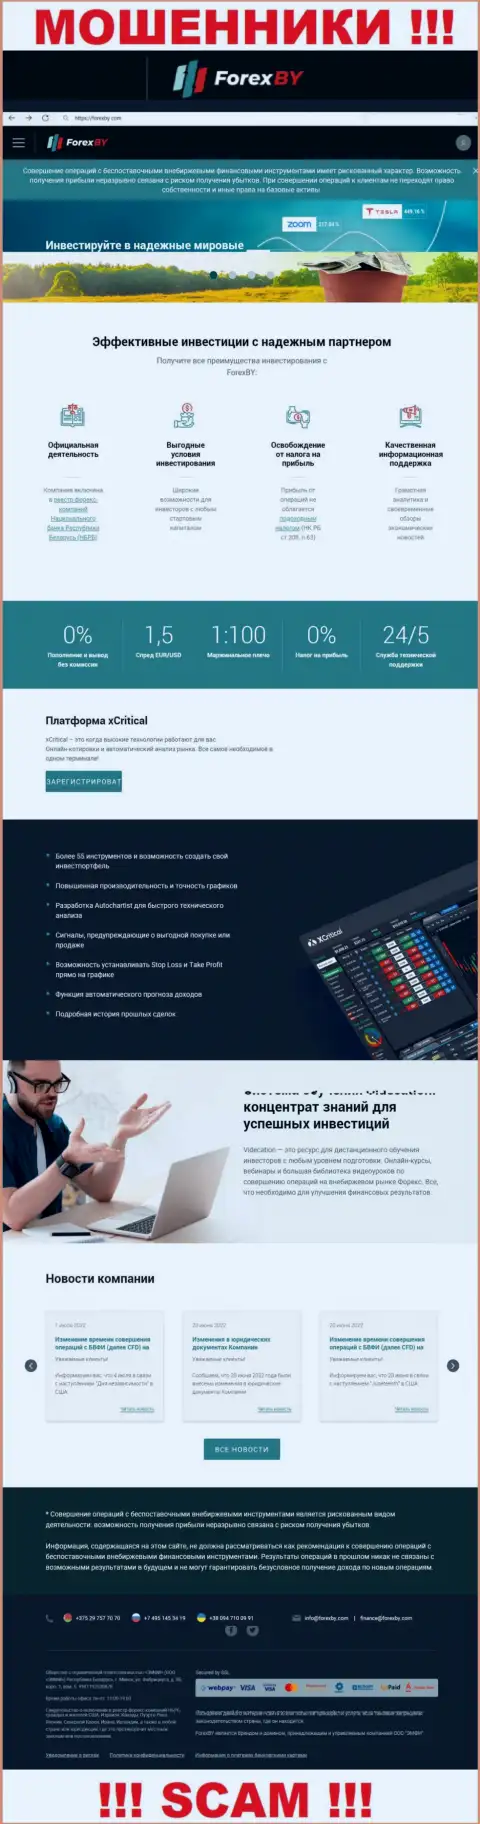 Официальный онлайн-сервис мошенников ООО ЭМФИ